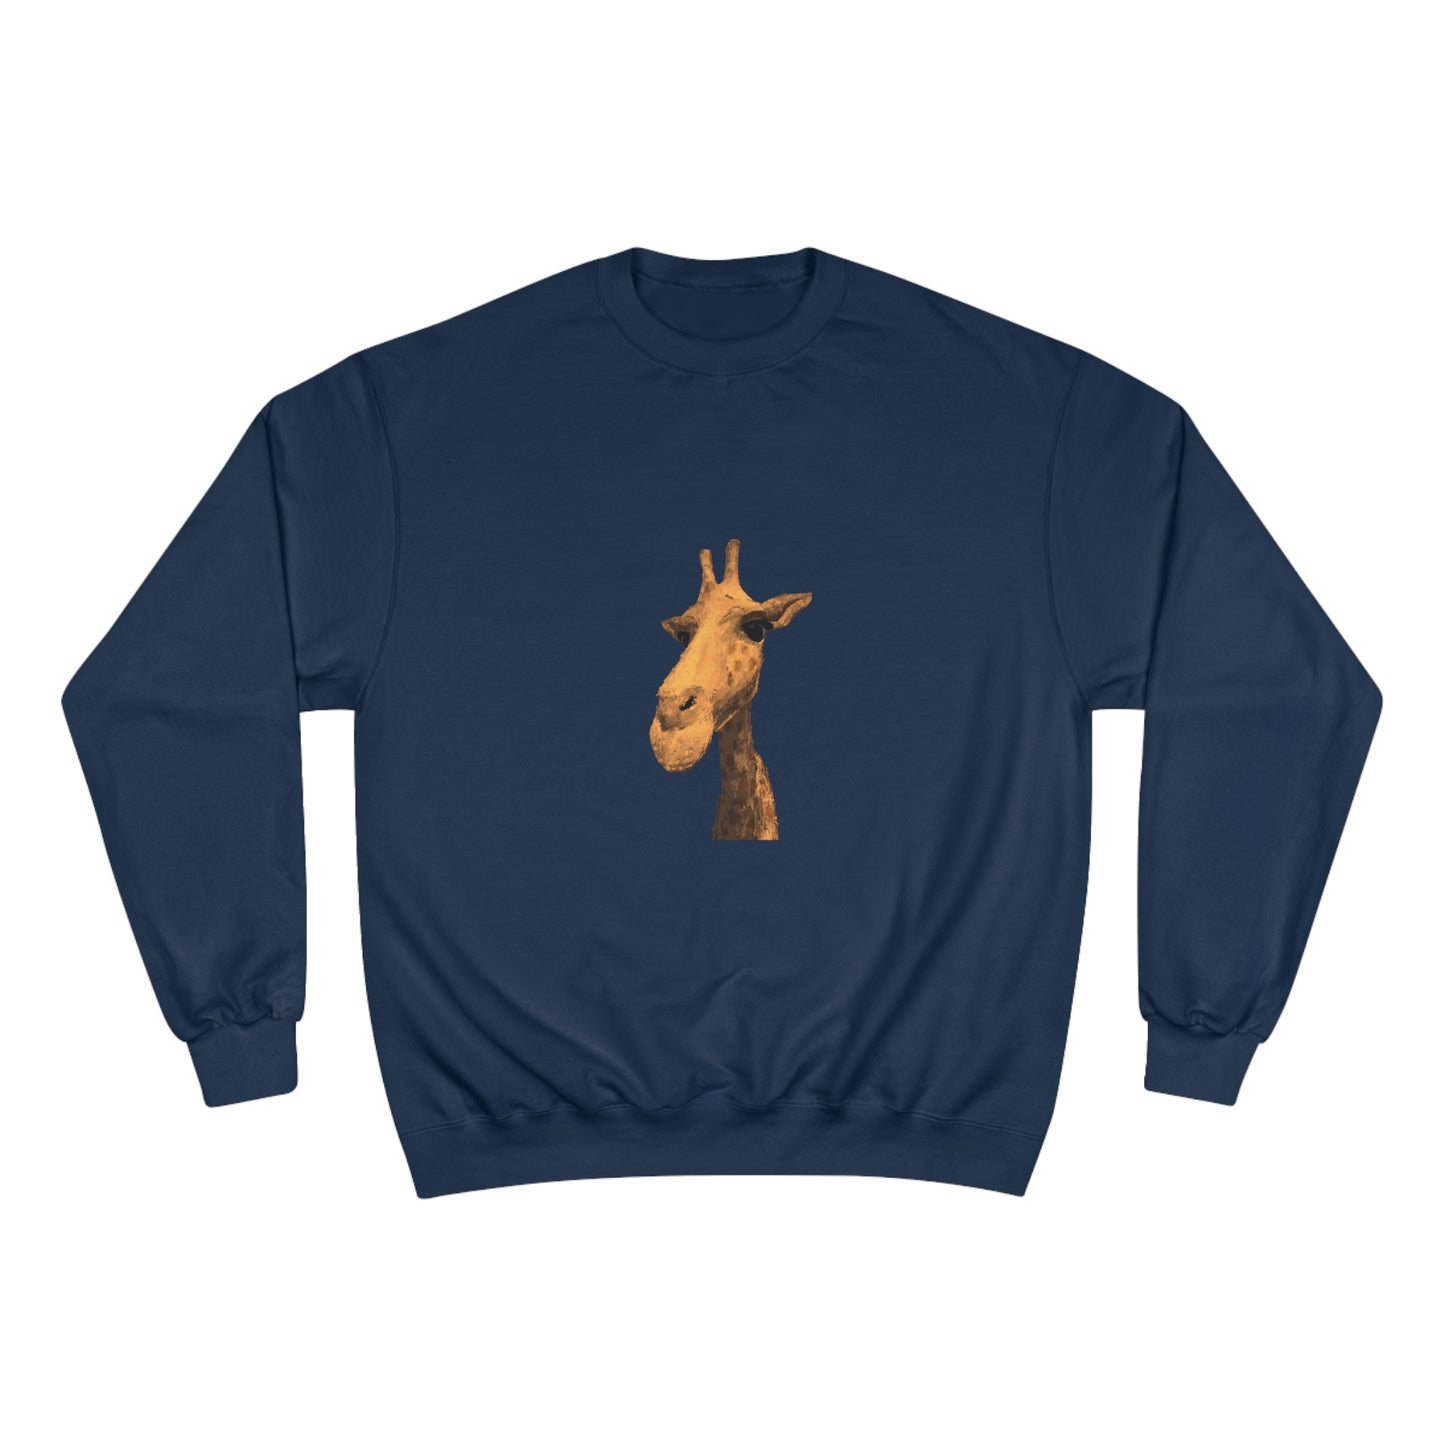 Giraffe Champion Sweatshirt